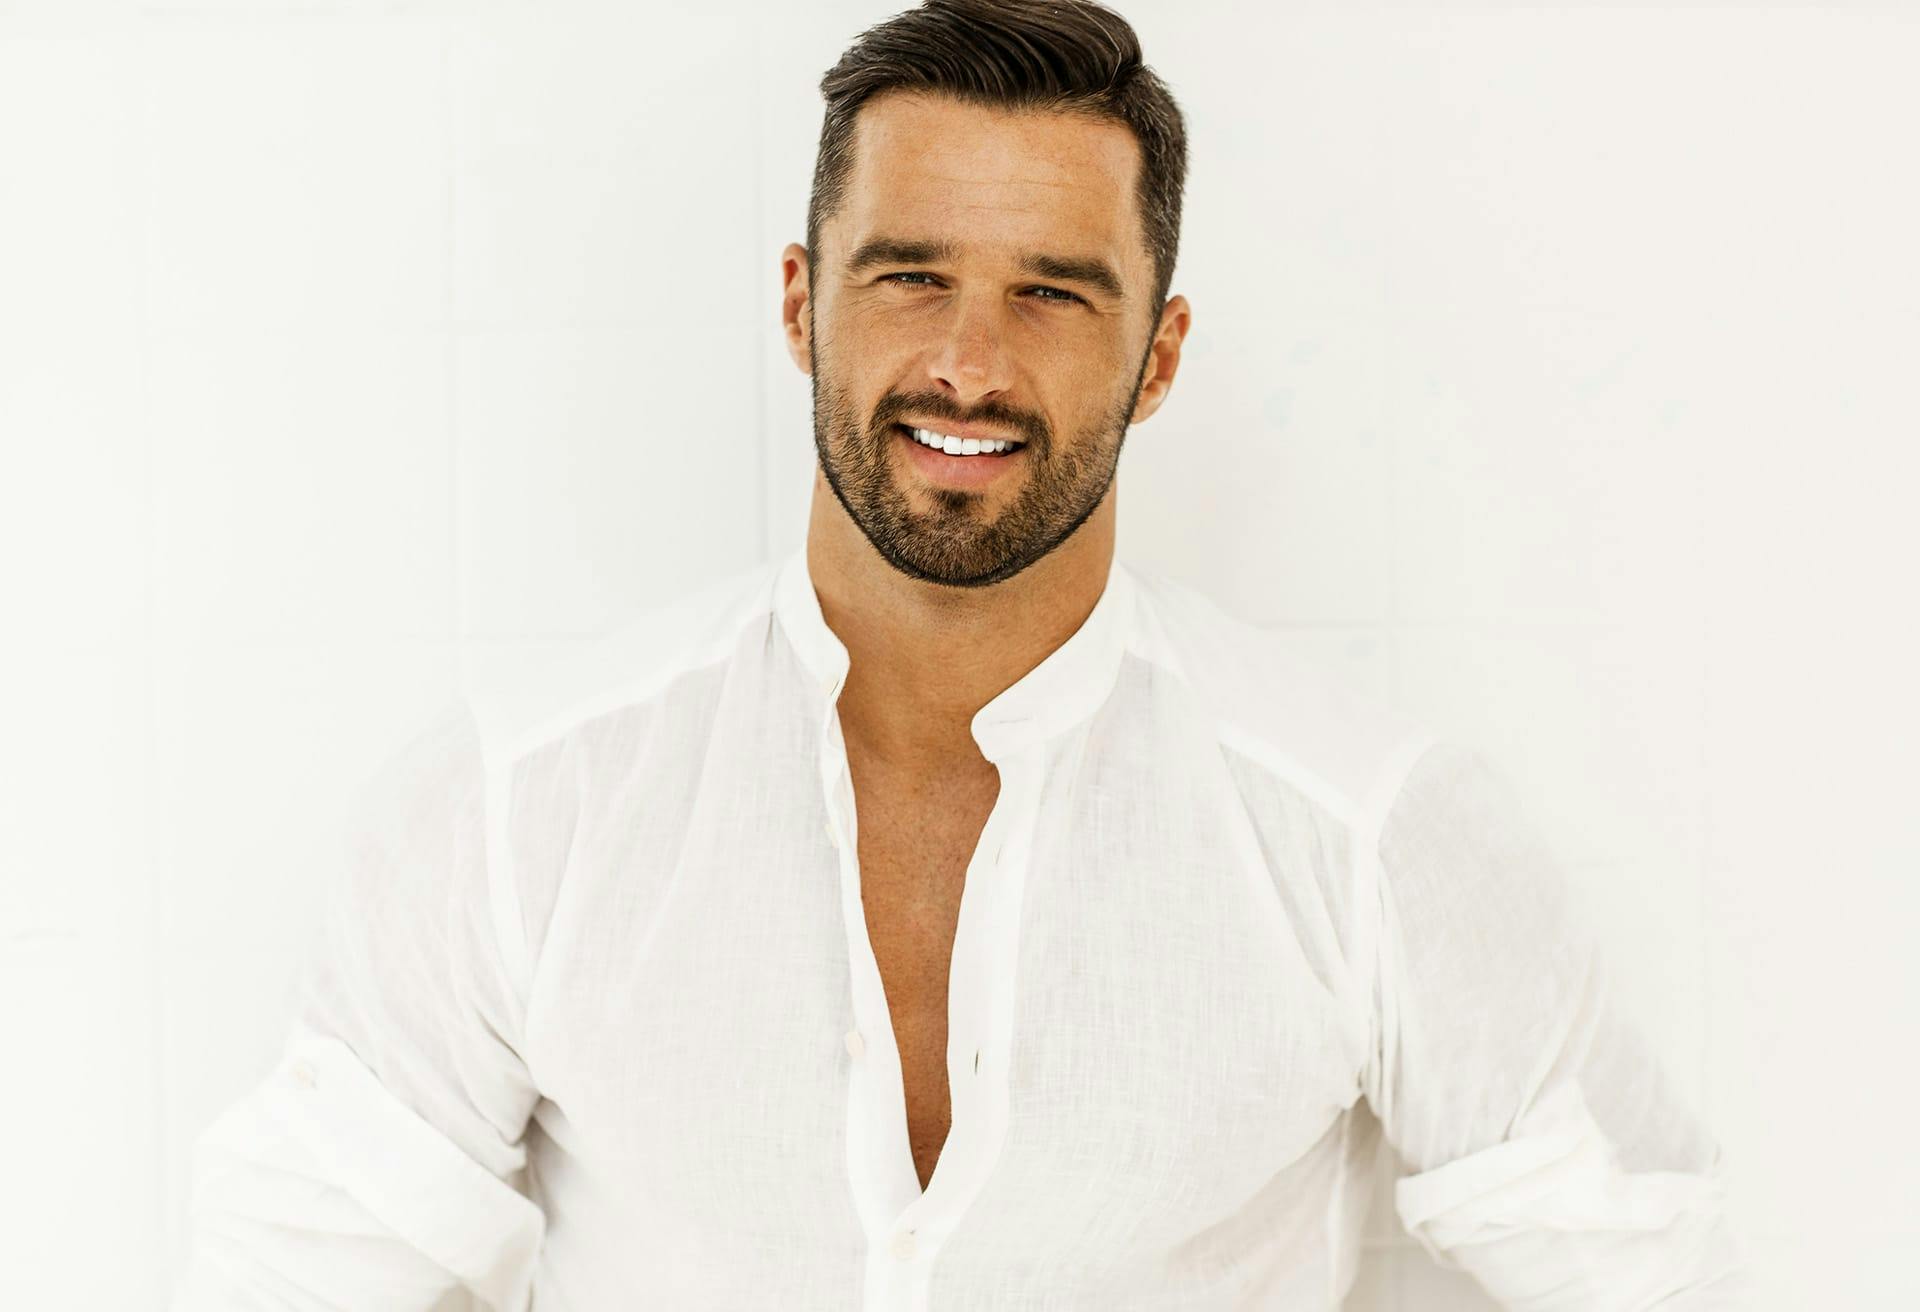 Man smiling wearing button up shirt